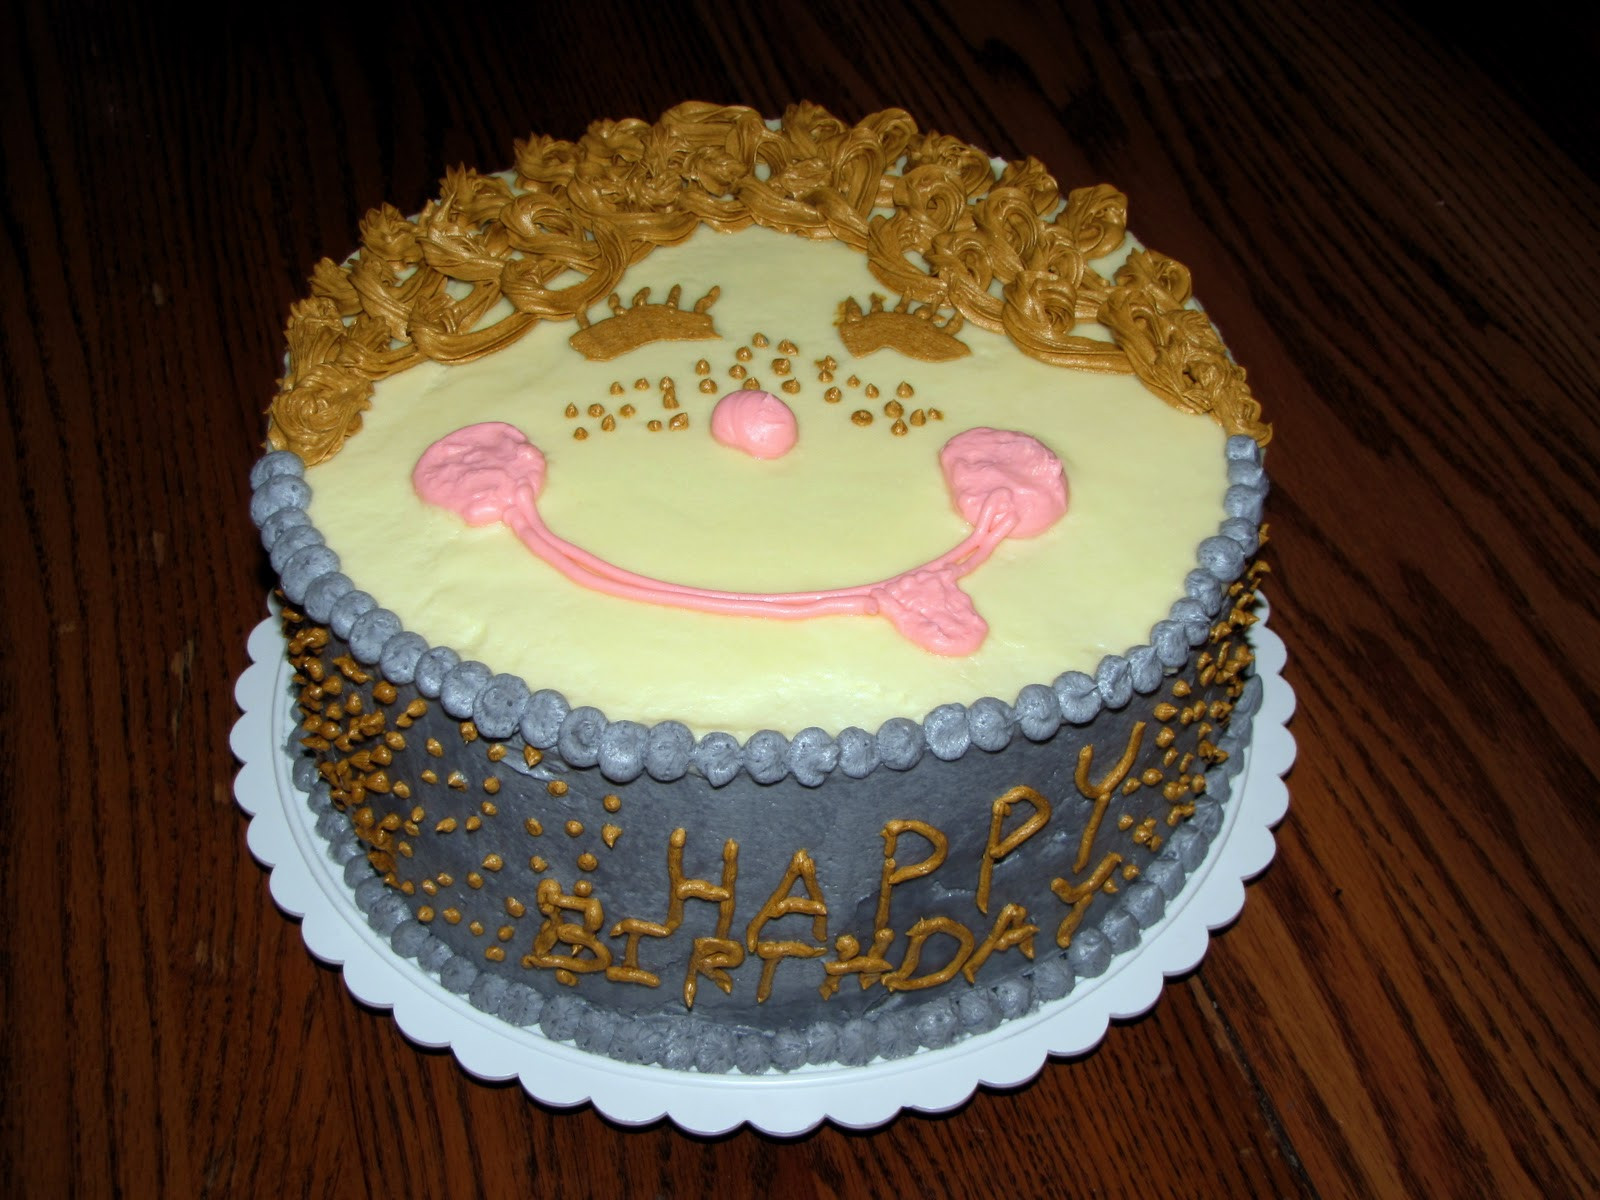 Happy Birthday Brenda Cake
 Delila Crystal s and Brenda s Birthday Cake